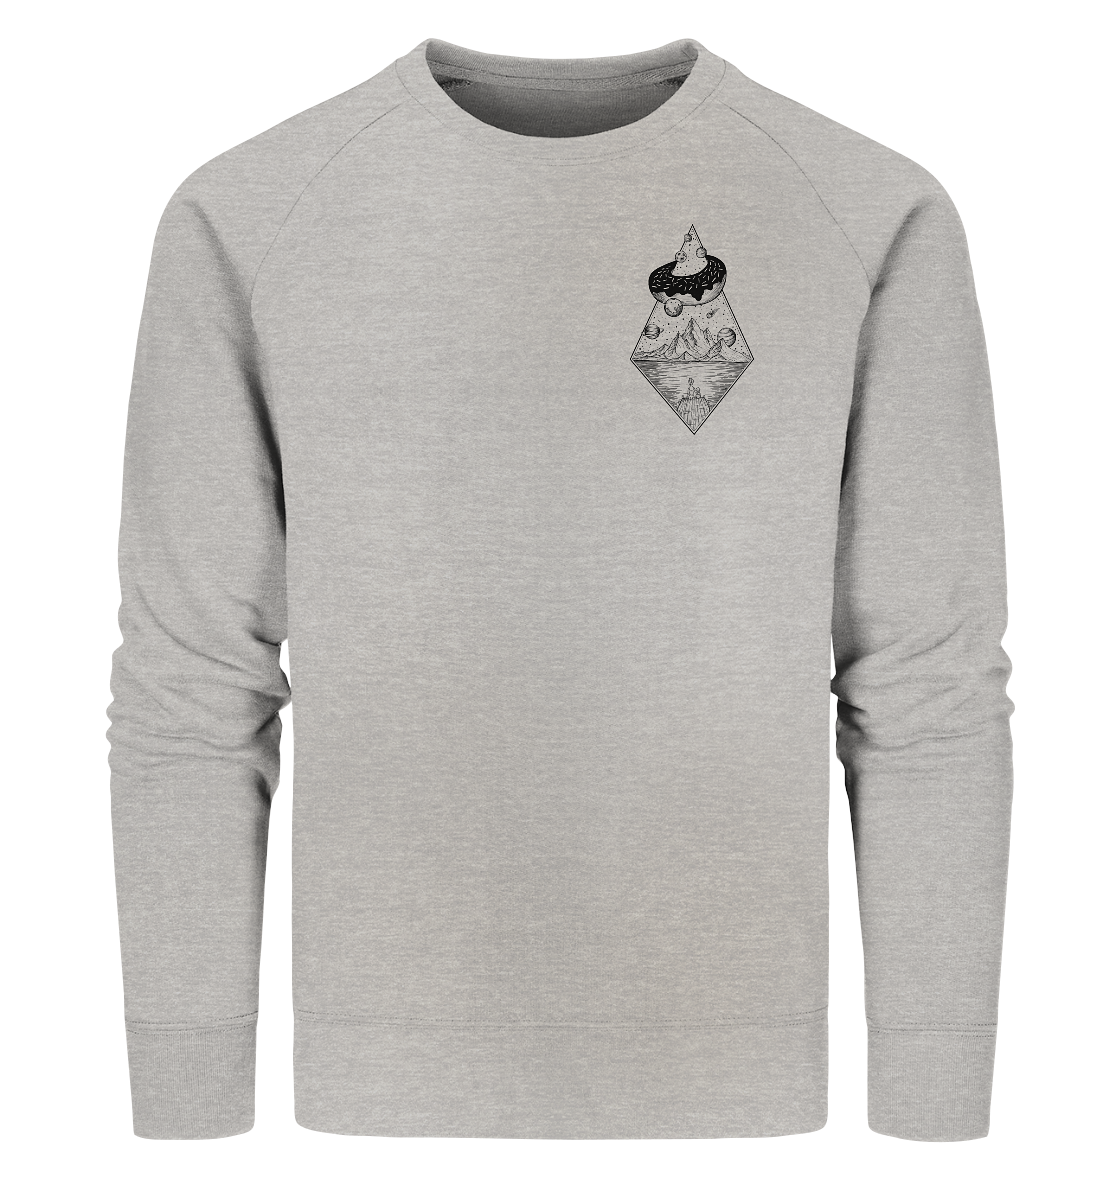 front-organic-sweatshirt-c2c1c0-1116x.png